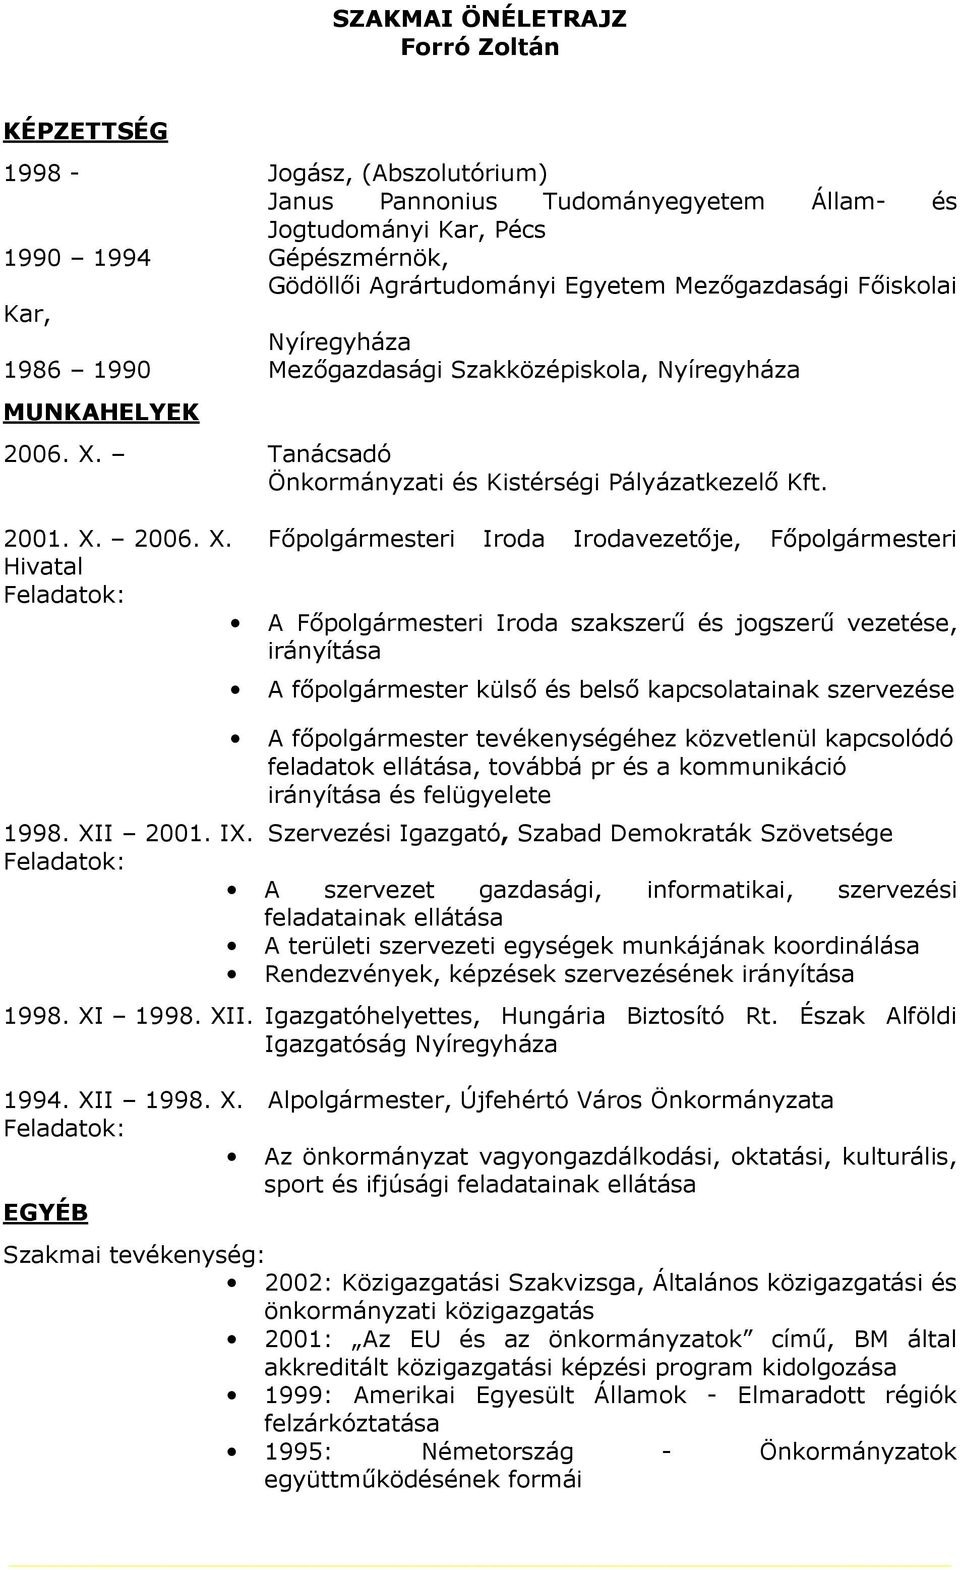 Tanácsadó Önkormányzati és Kistérségi Pályázatkezelő Kft. 2001. X.